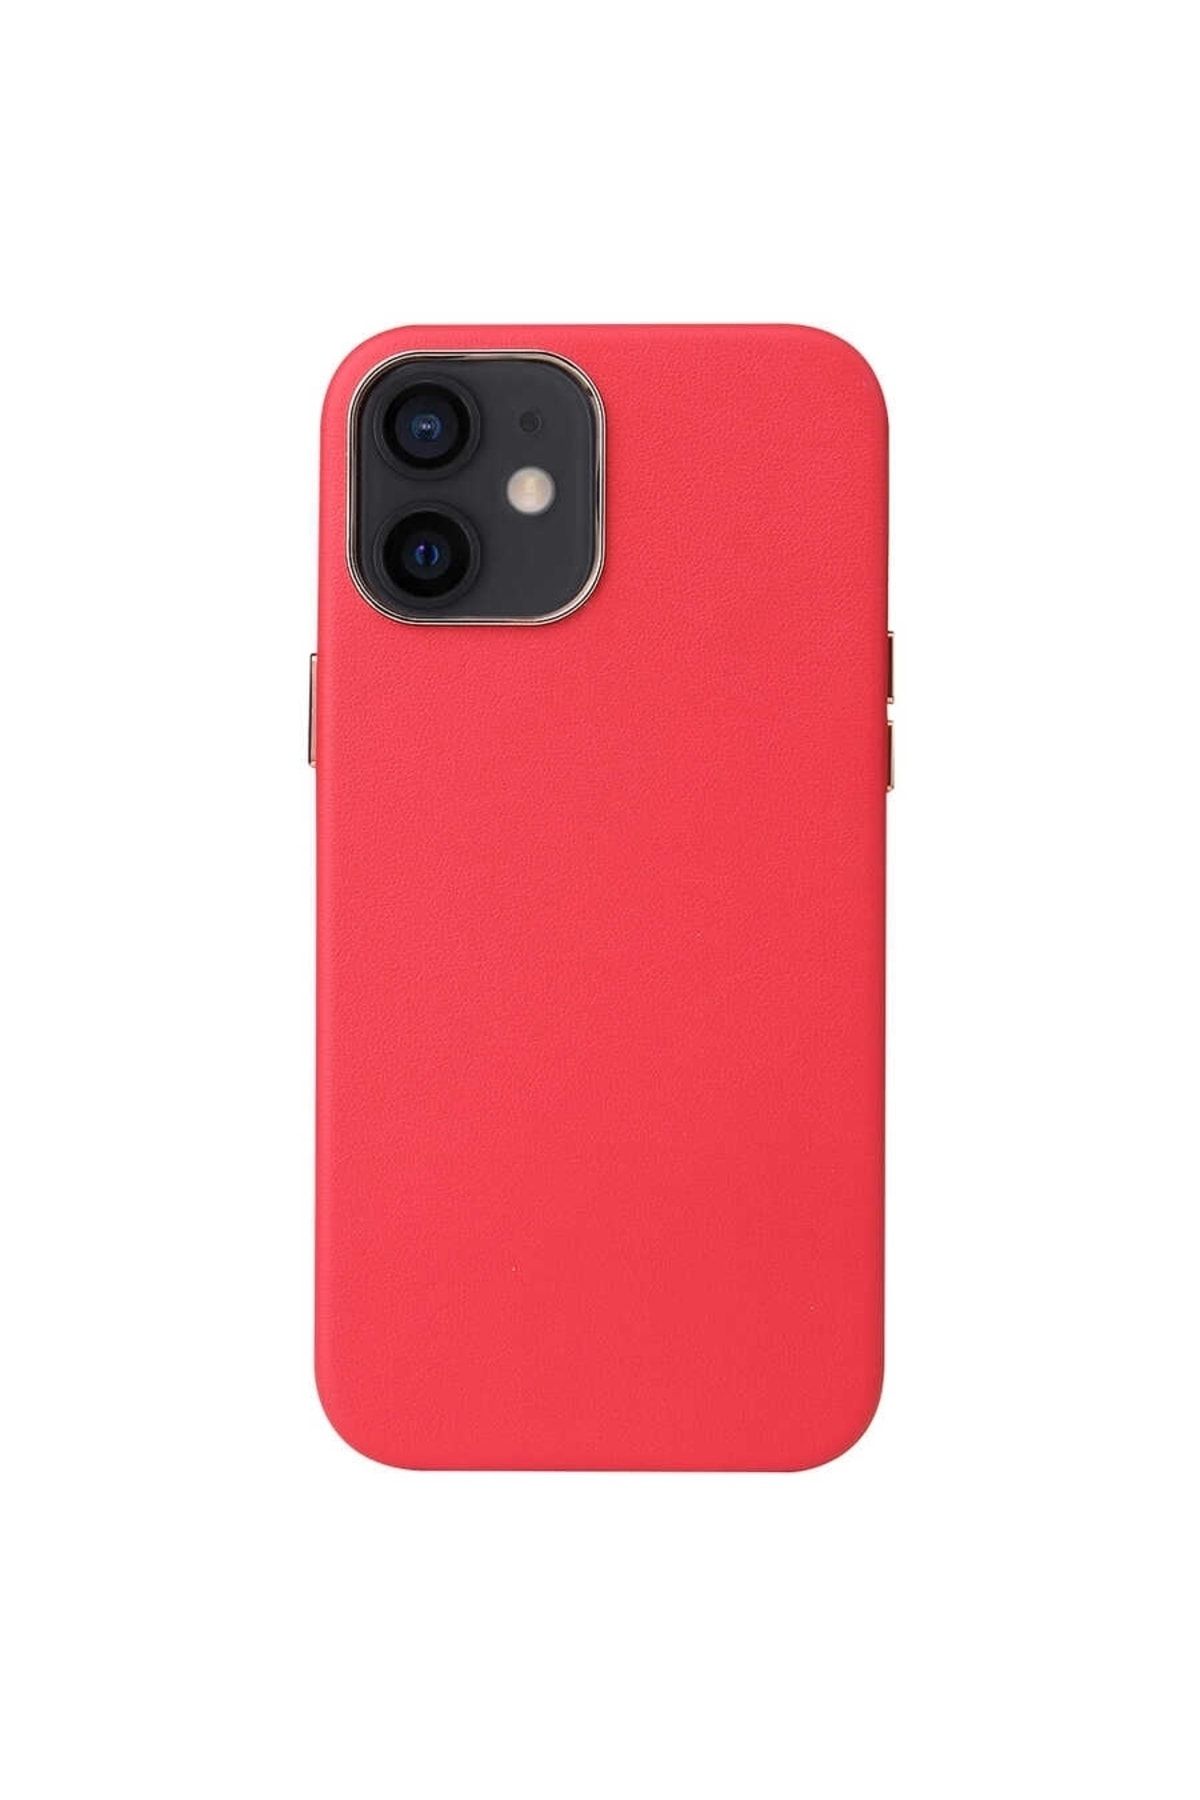 Gpack Apple iPhone 12 Mini Kılıf Eyzi Deri Silikon Lüx Tasarım Kırmızı